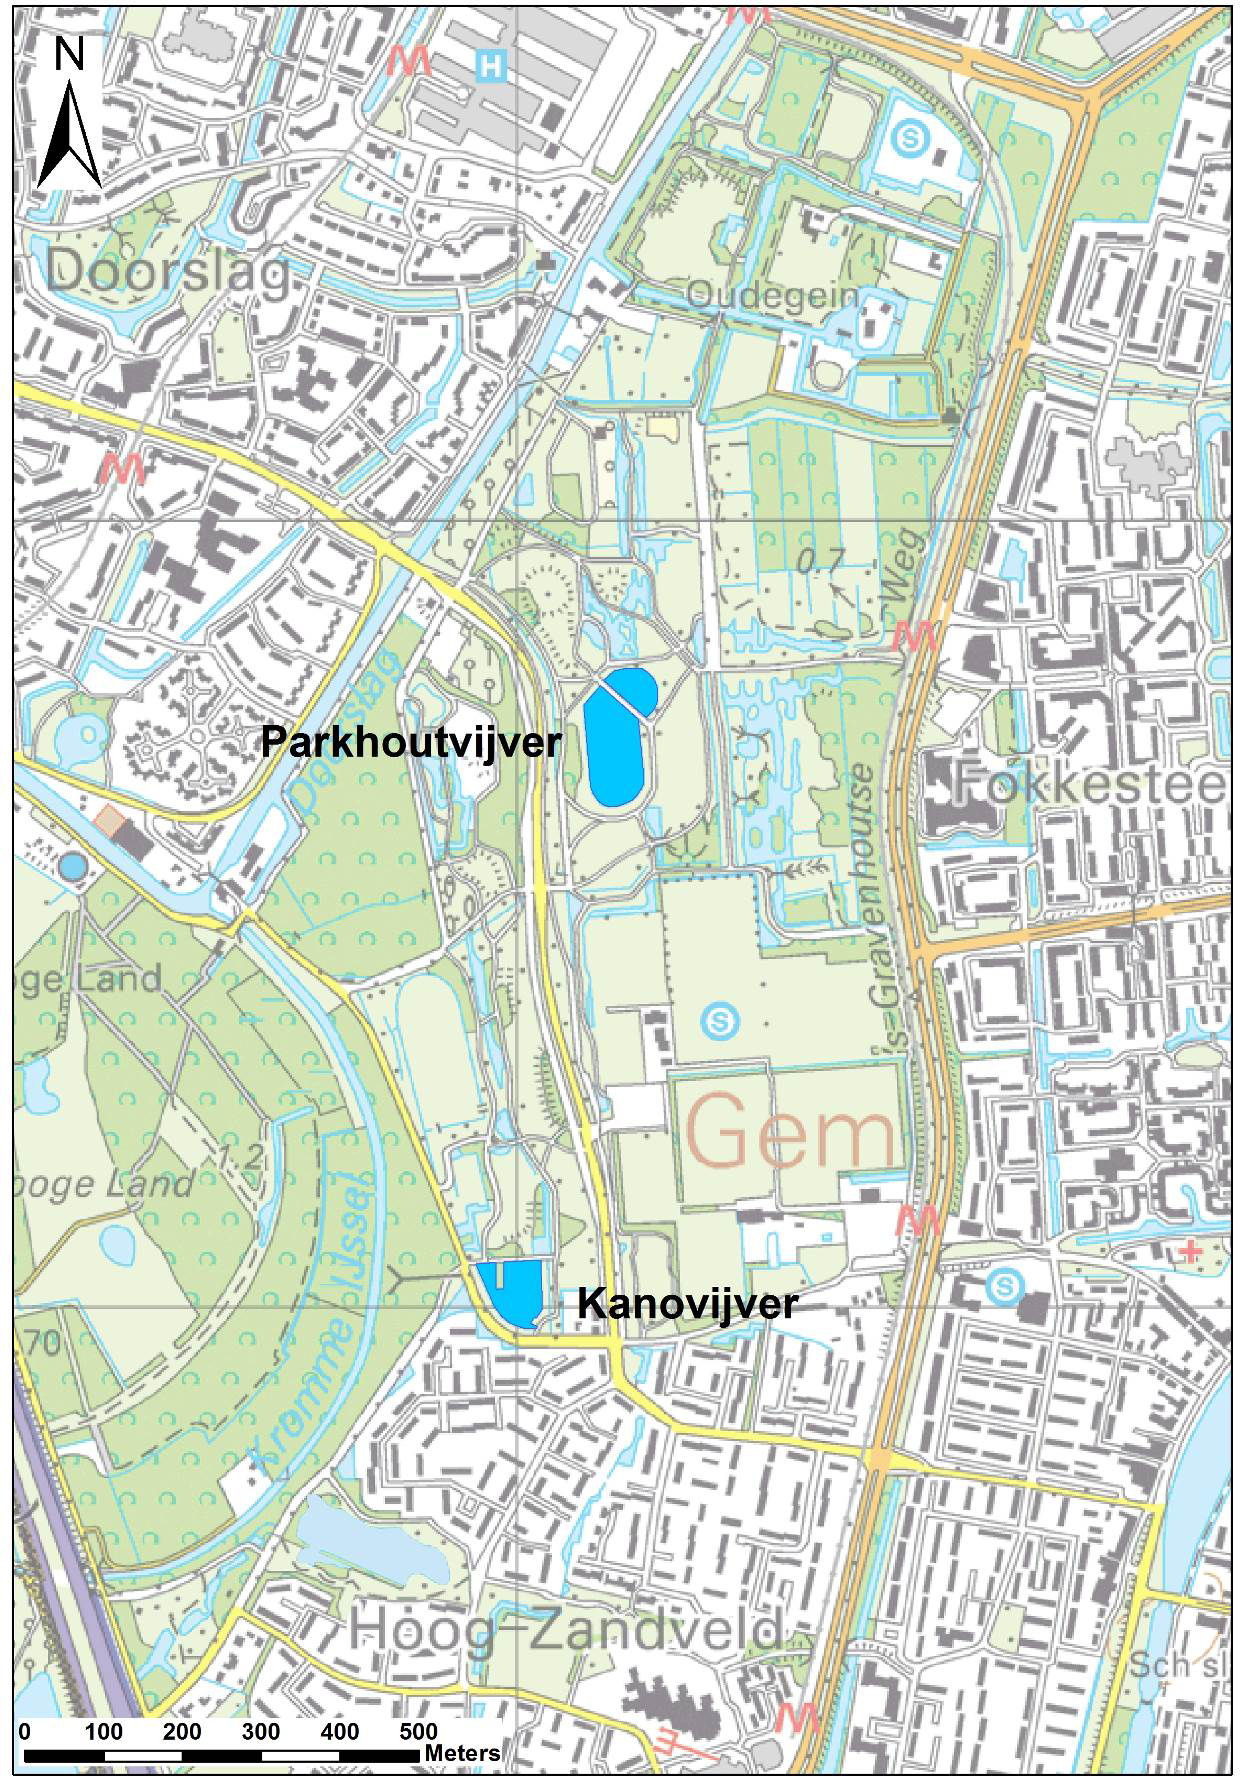 - Vijvers park Oudegein te Nieuwegein - Topografische ondergrond: Topografische Dienst,